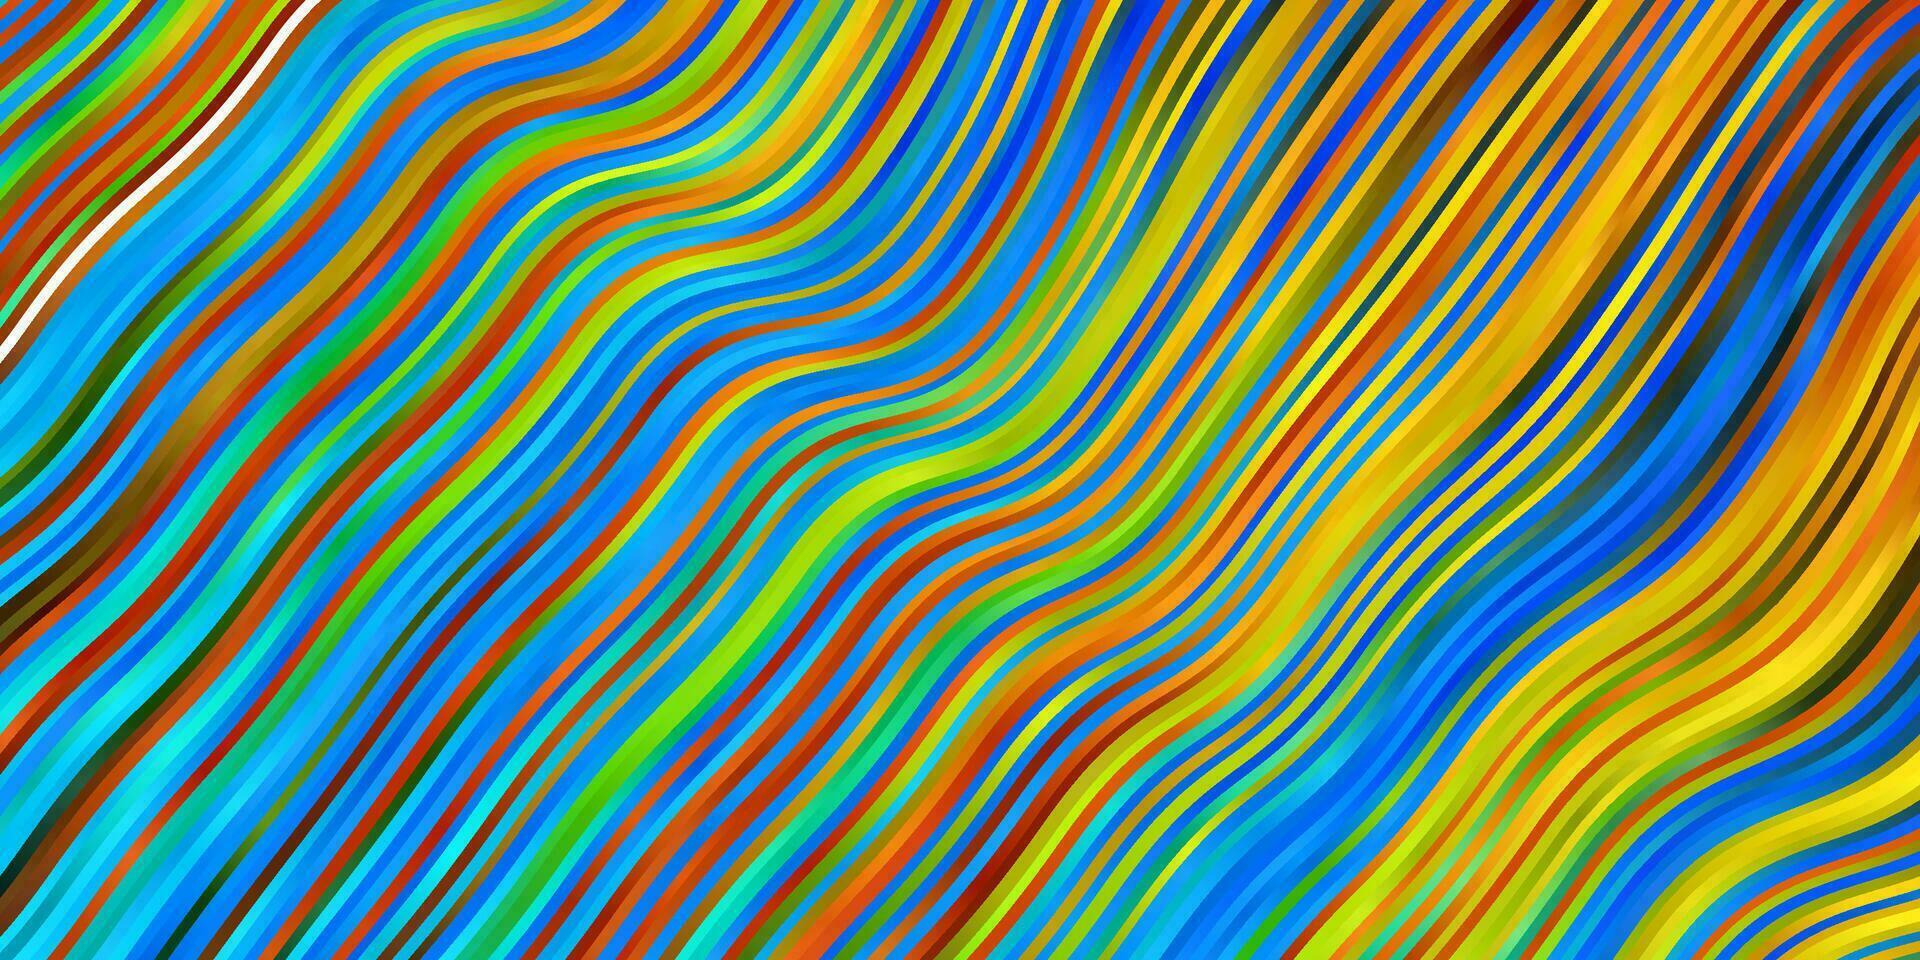 patrón de vector azul claro, amarillo con líneas.